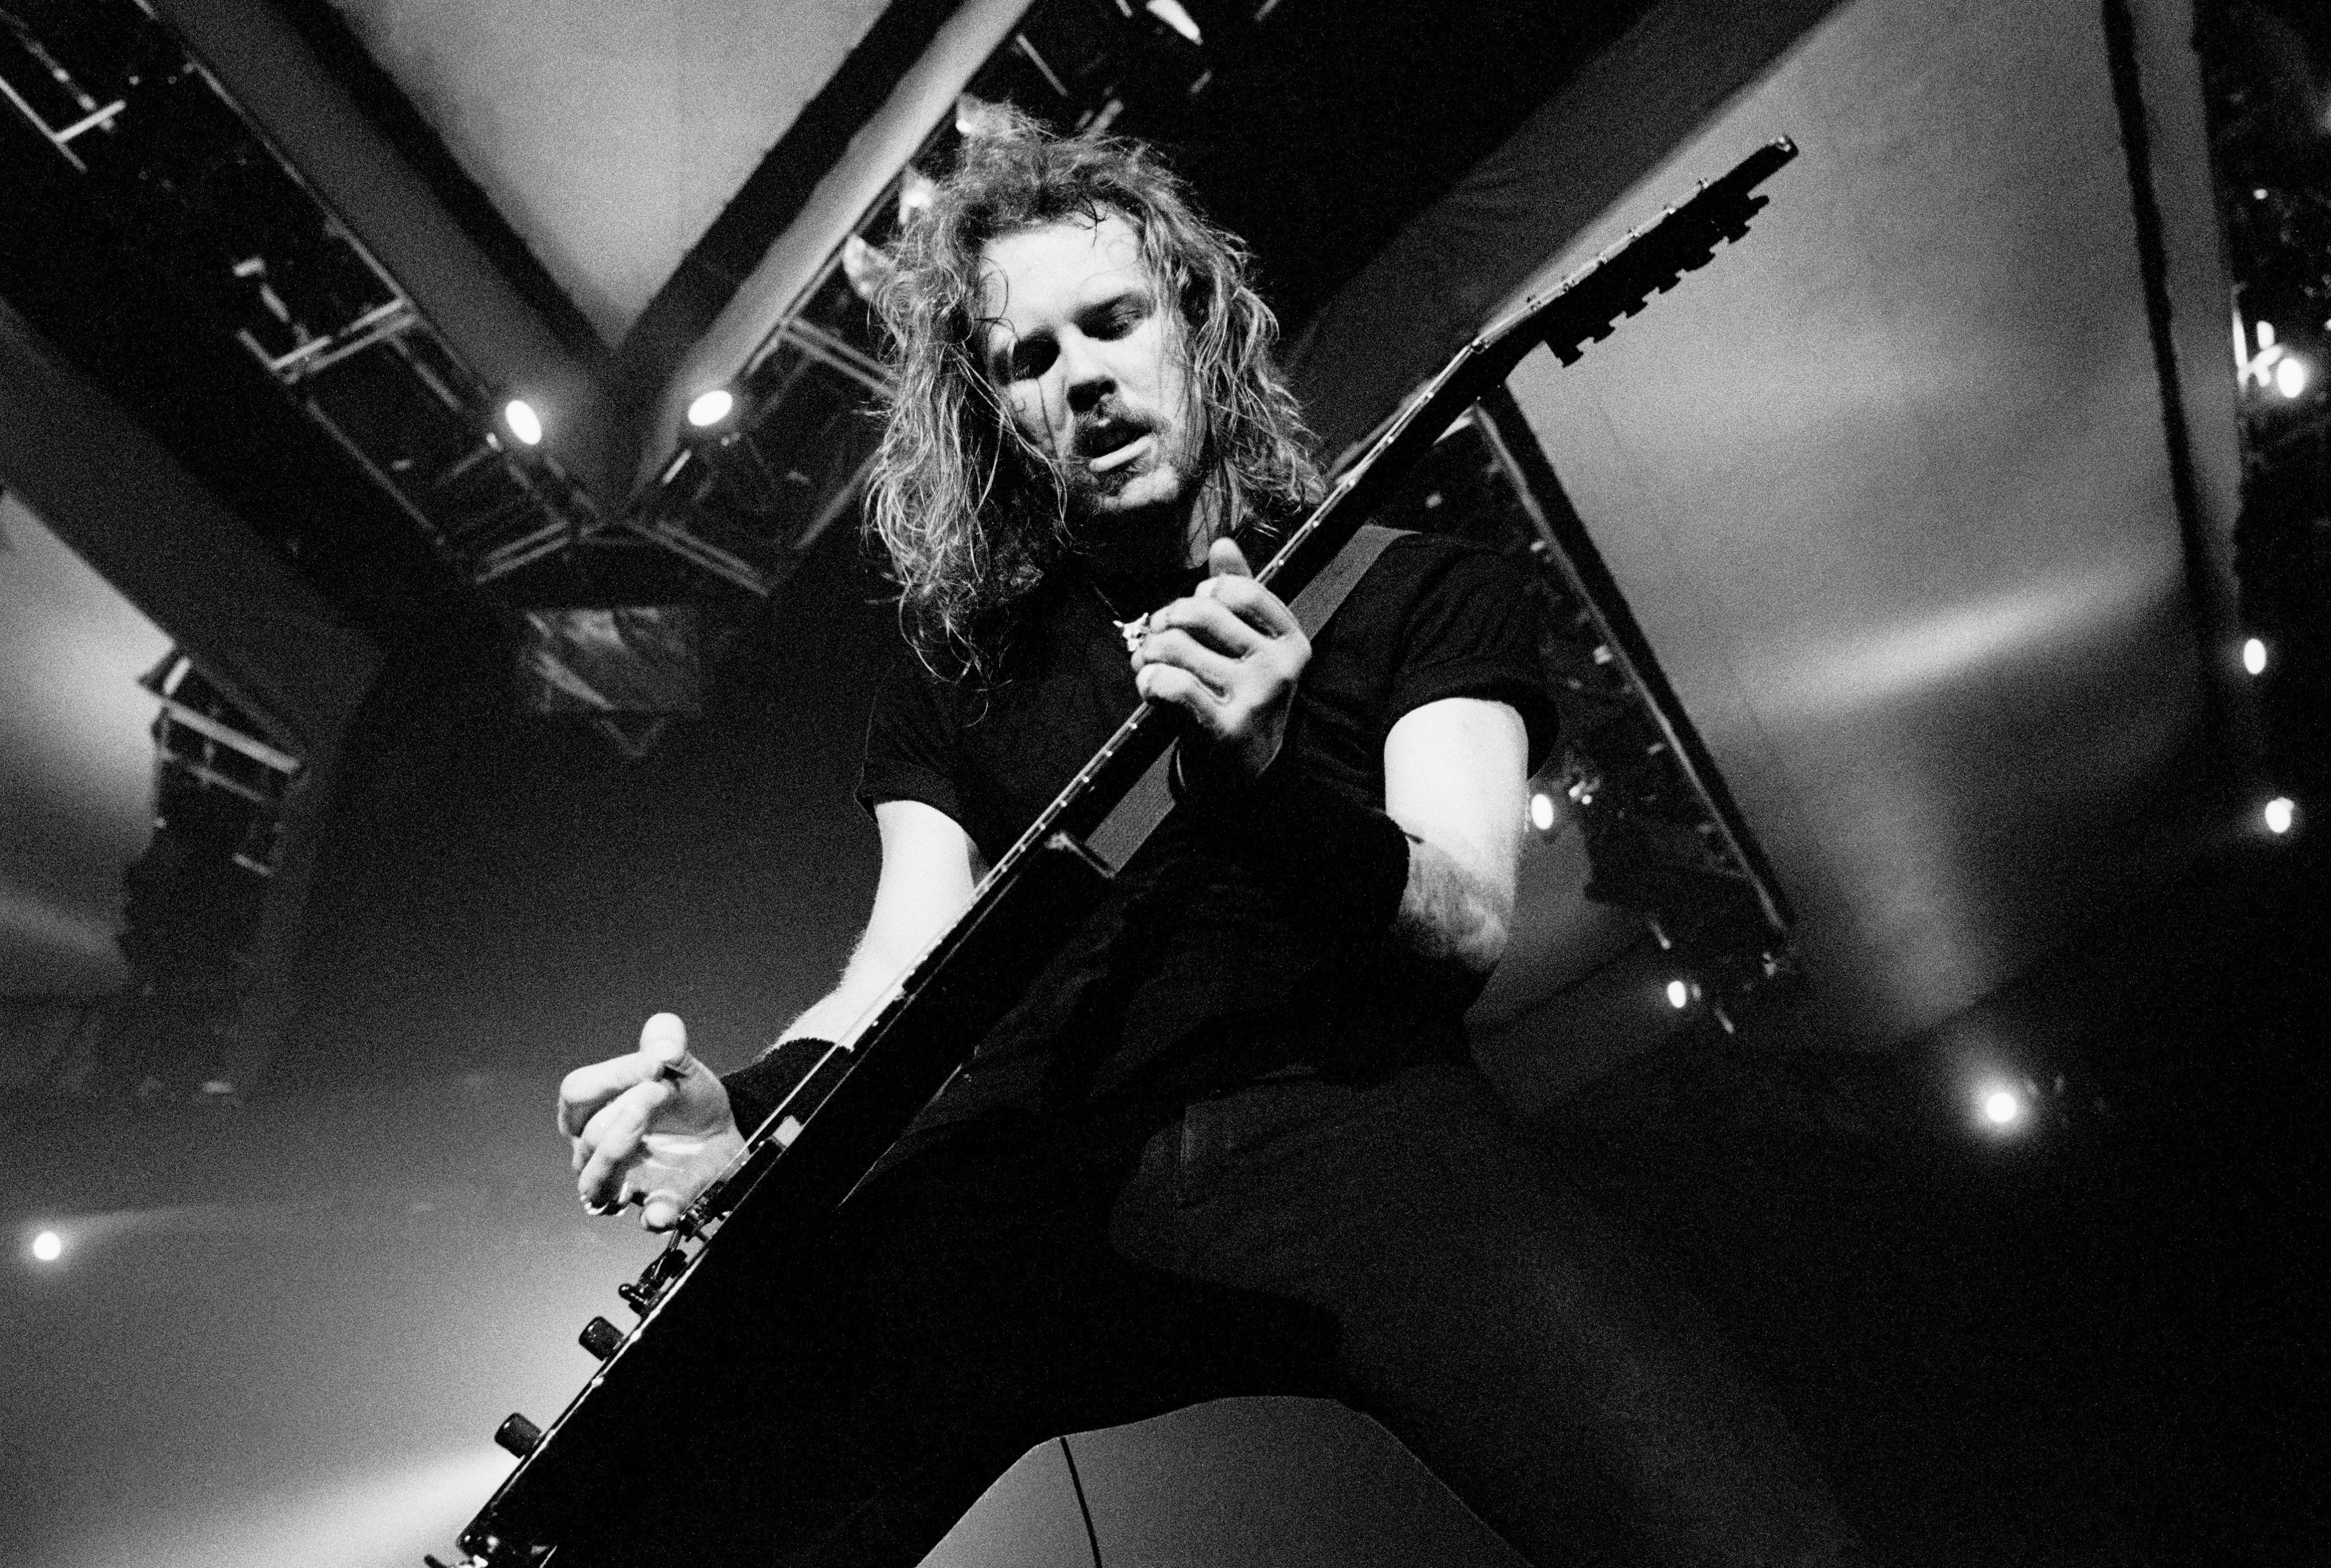 Concerto dos Metallica nos Países Baixos